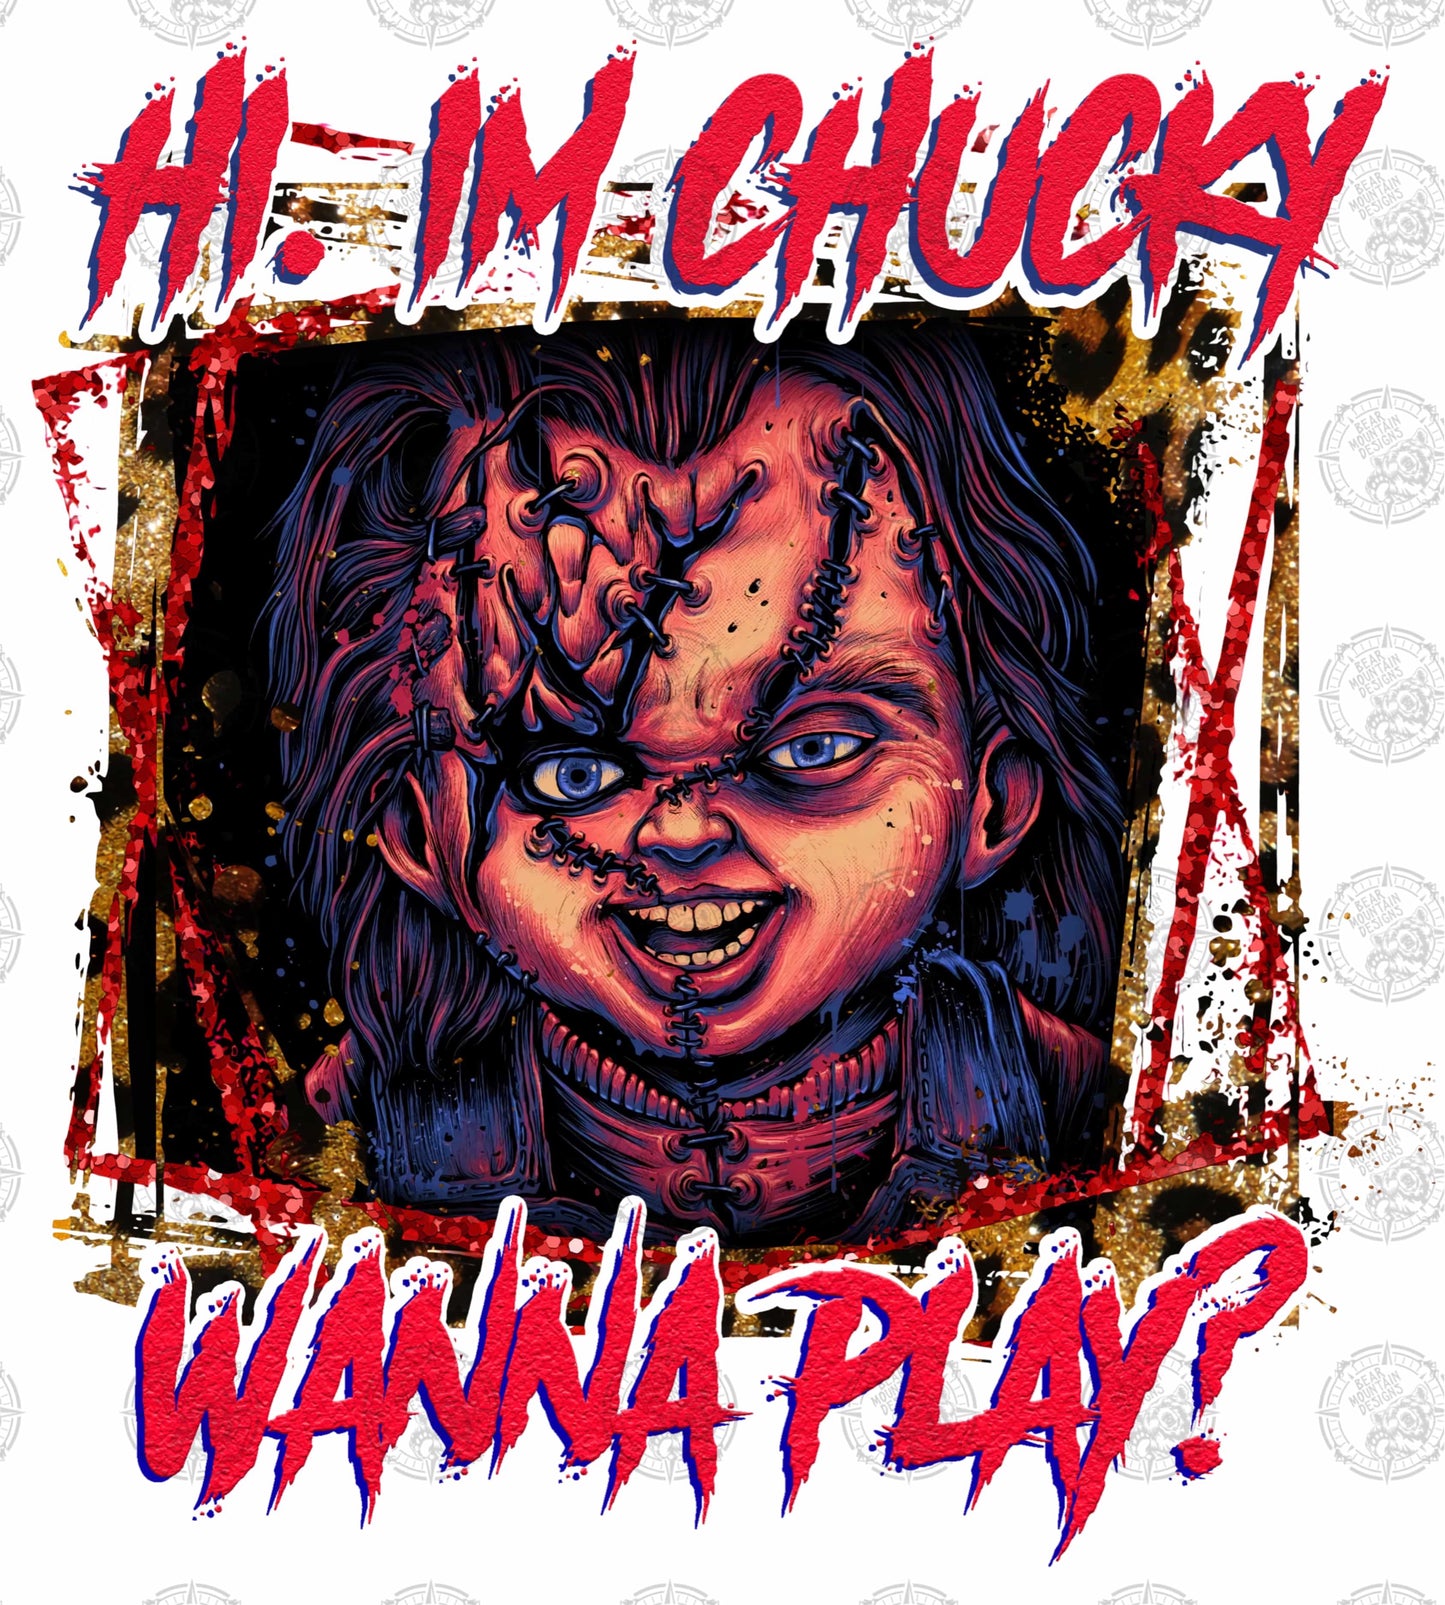 Chucky - Wanna Play?